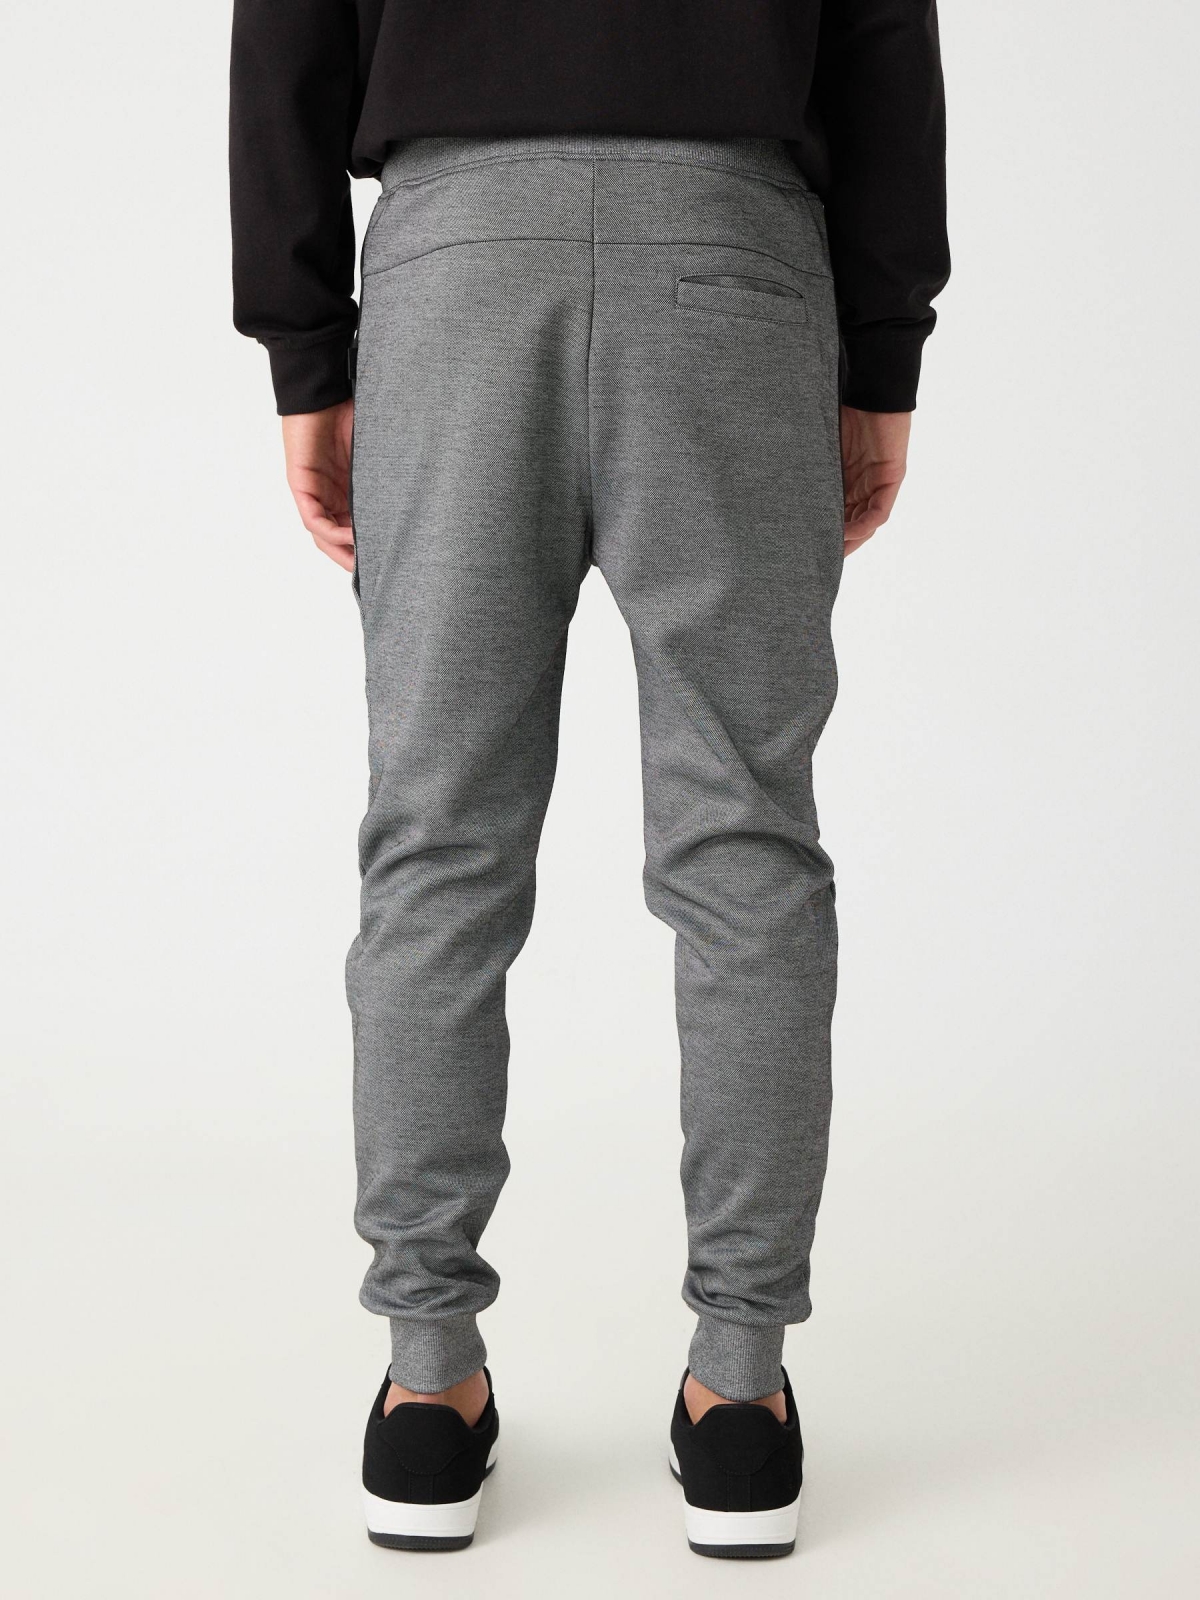 Pantalón jogger gris combinado plomo vista media trasera